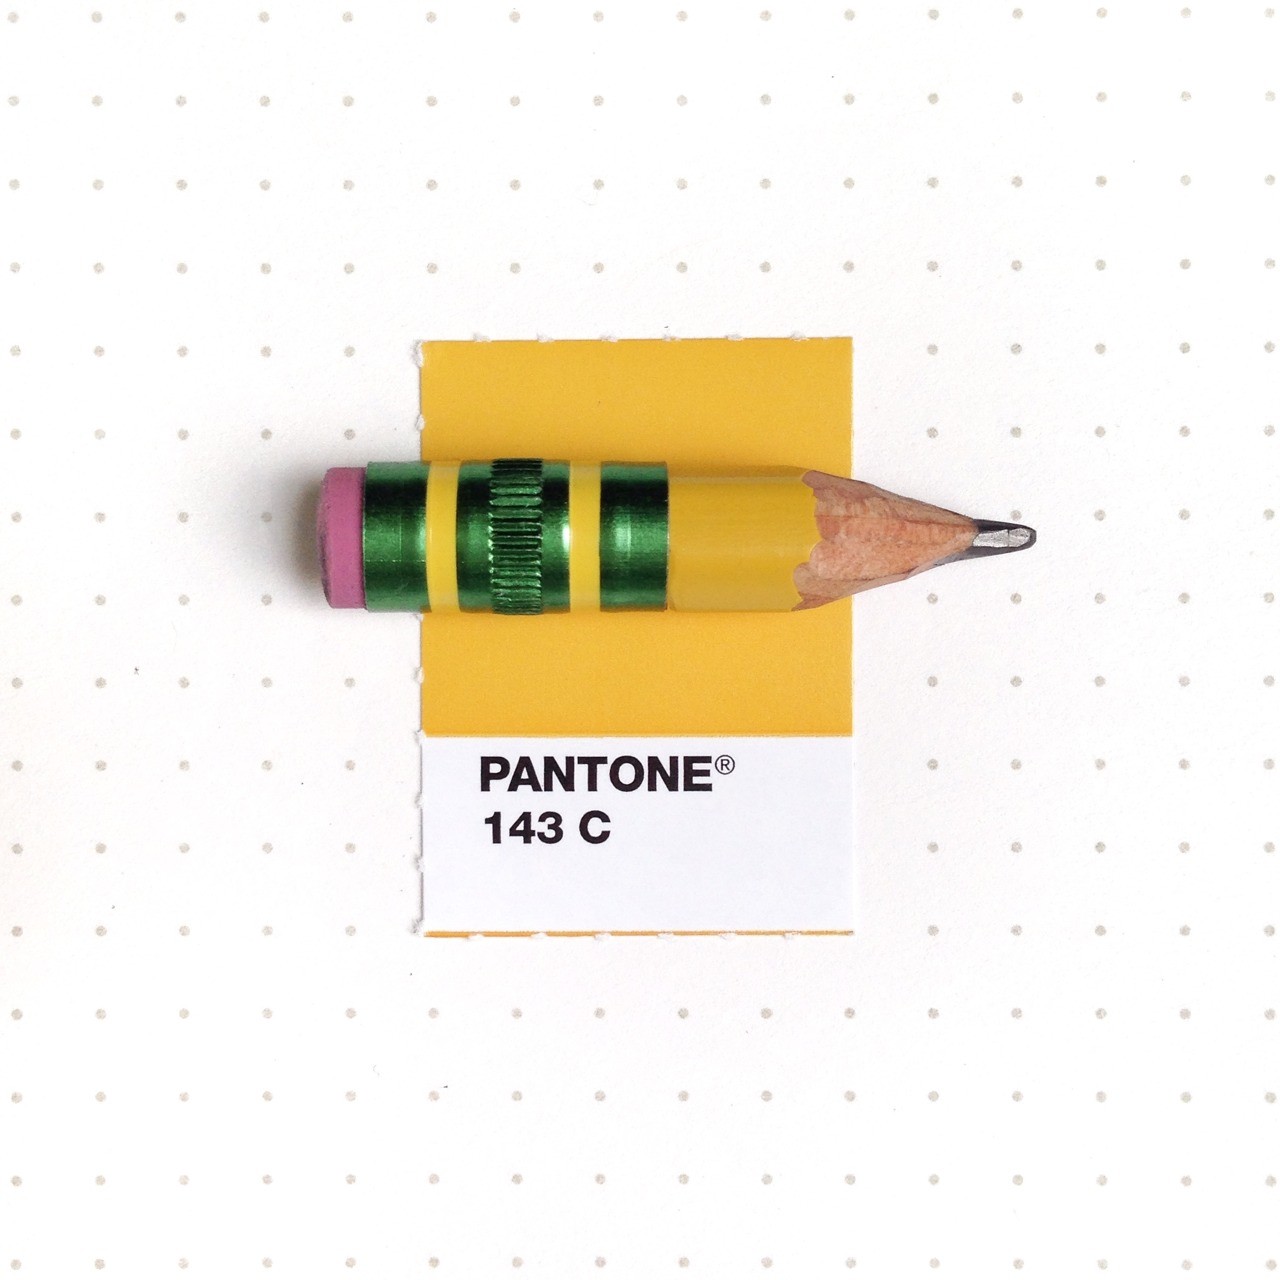 Toco de lápis (Foto: Reprodução)